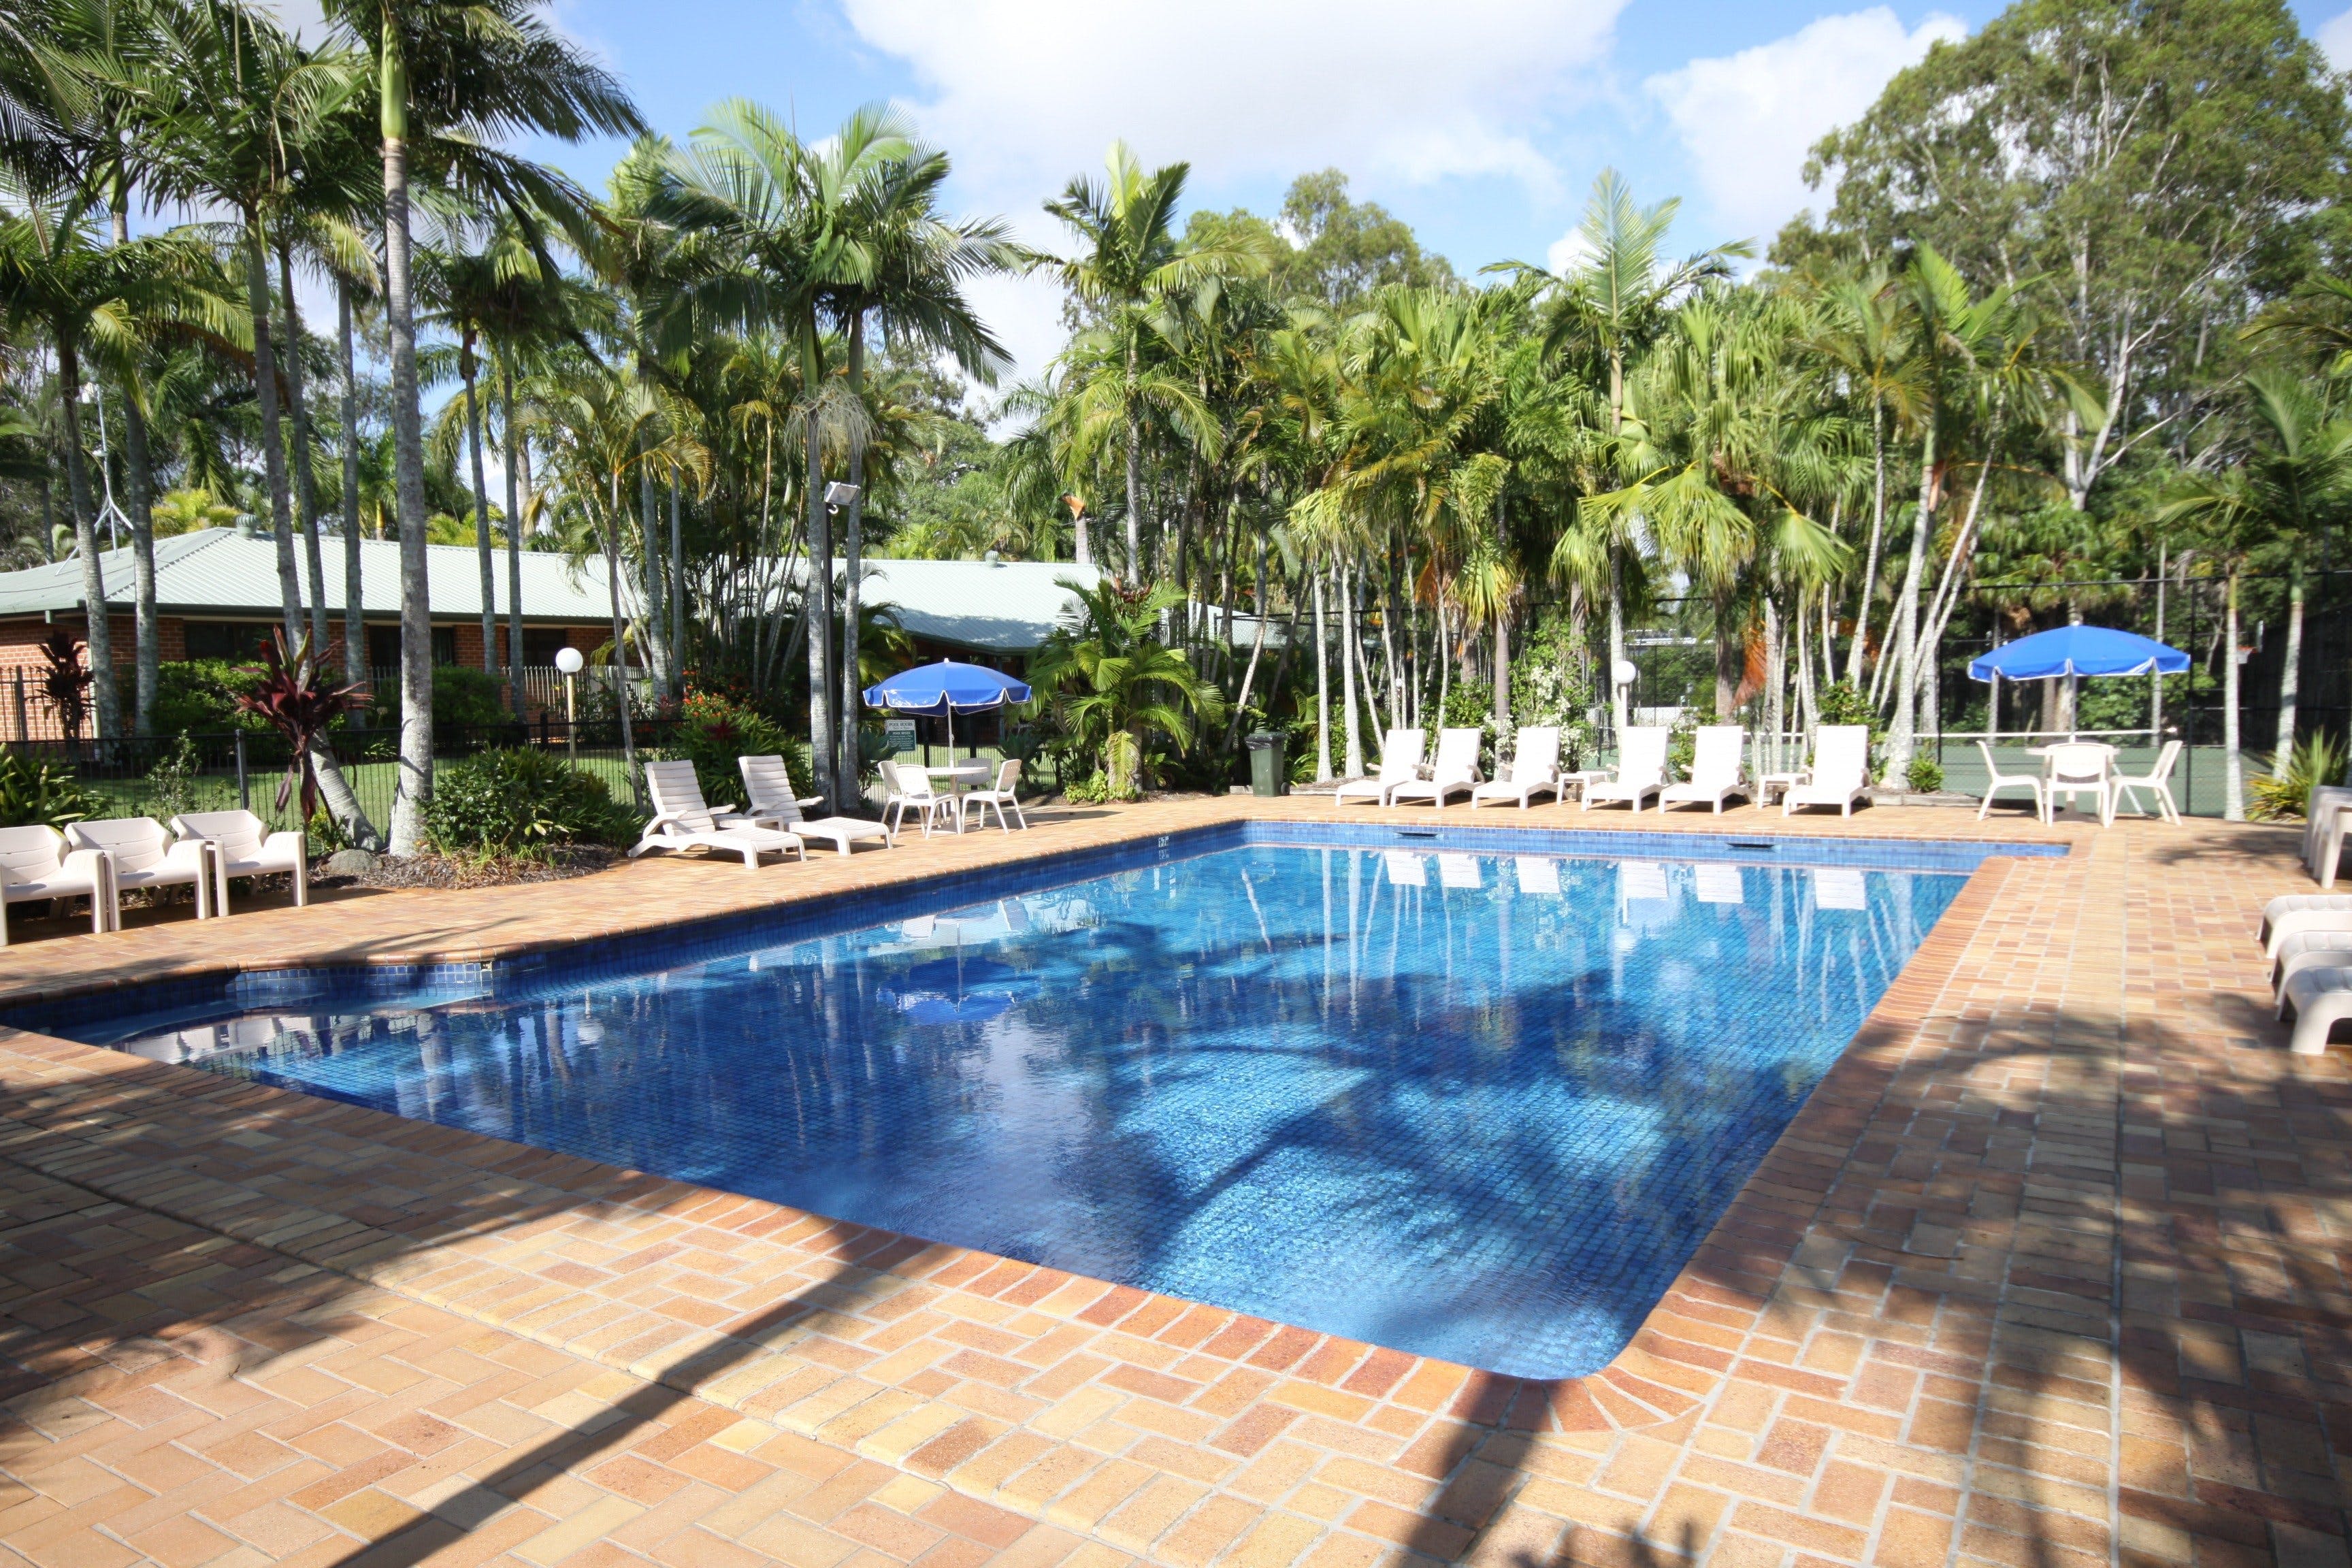 Brisbane Gateway Resort - Accommodation in Bendigo